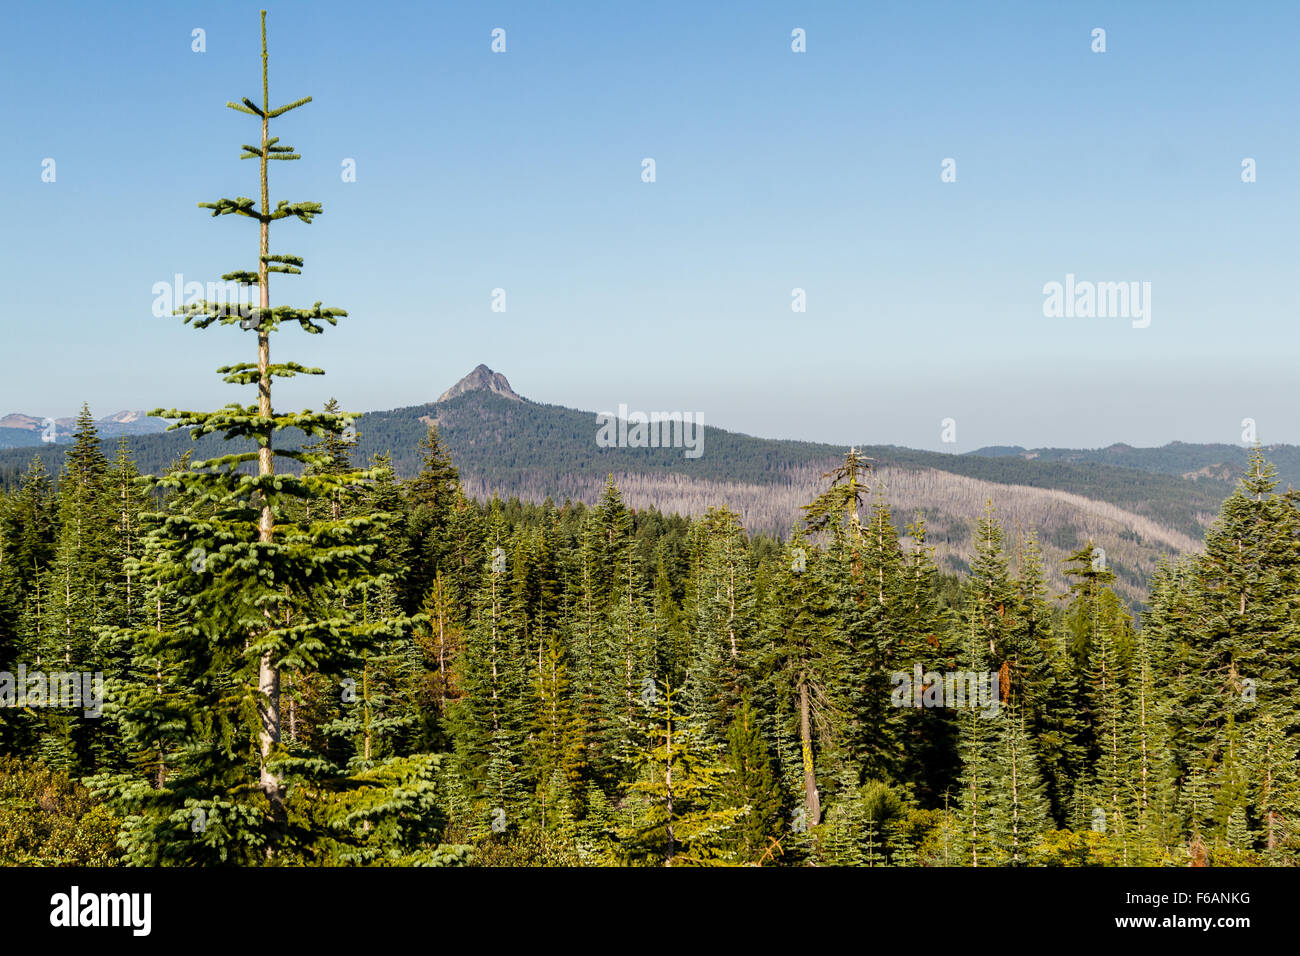 Landschaft eines Berges im südlichen Oregon mit einem Patch des toten Holzes nach einem wilden Waldfeuer einen großen Teil der fo brannte Stockfoto